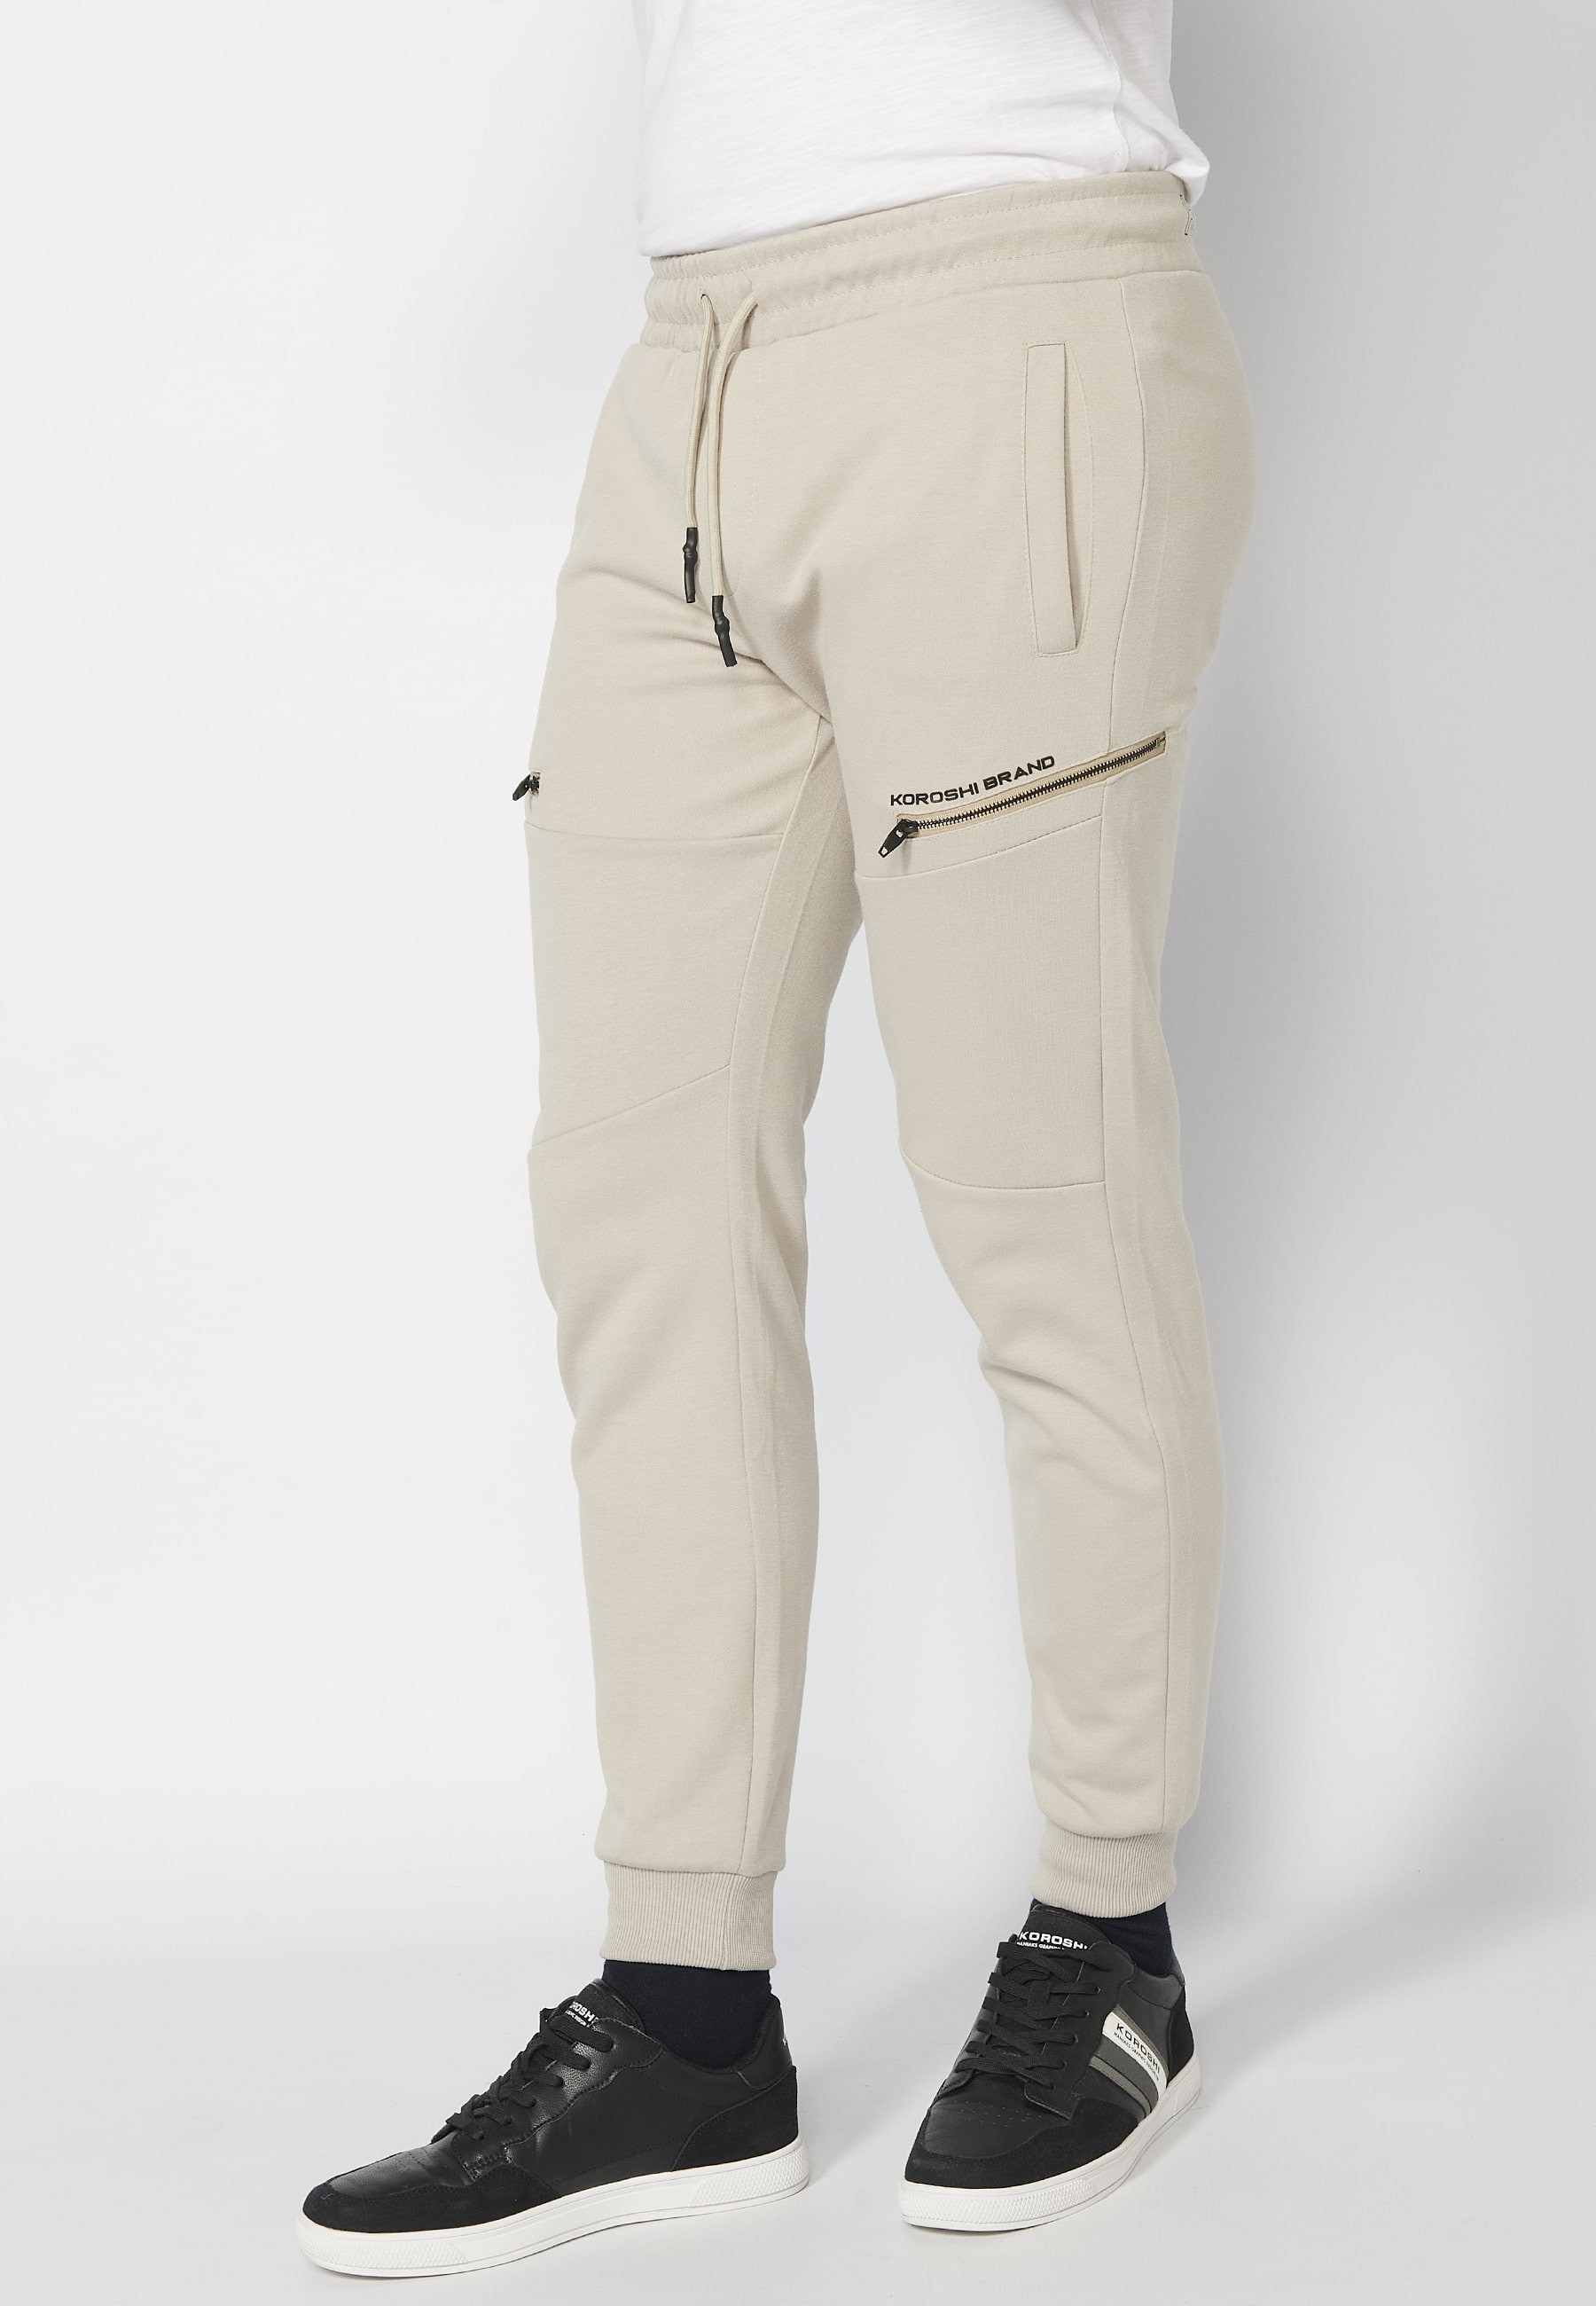 Pantalon de jogging long avec taille caoutchoutée et cordon de serrage avec découpes aux genoux, couleur Stone, pour Homme 4